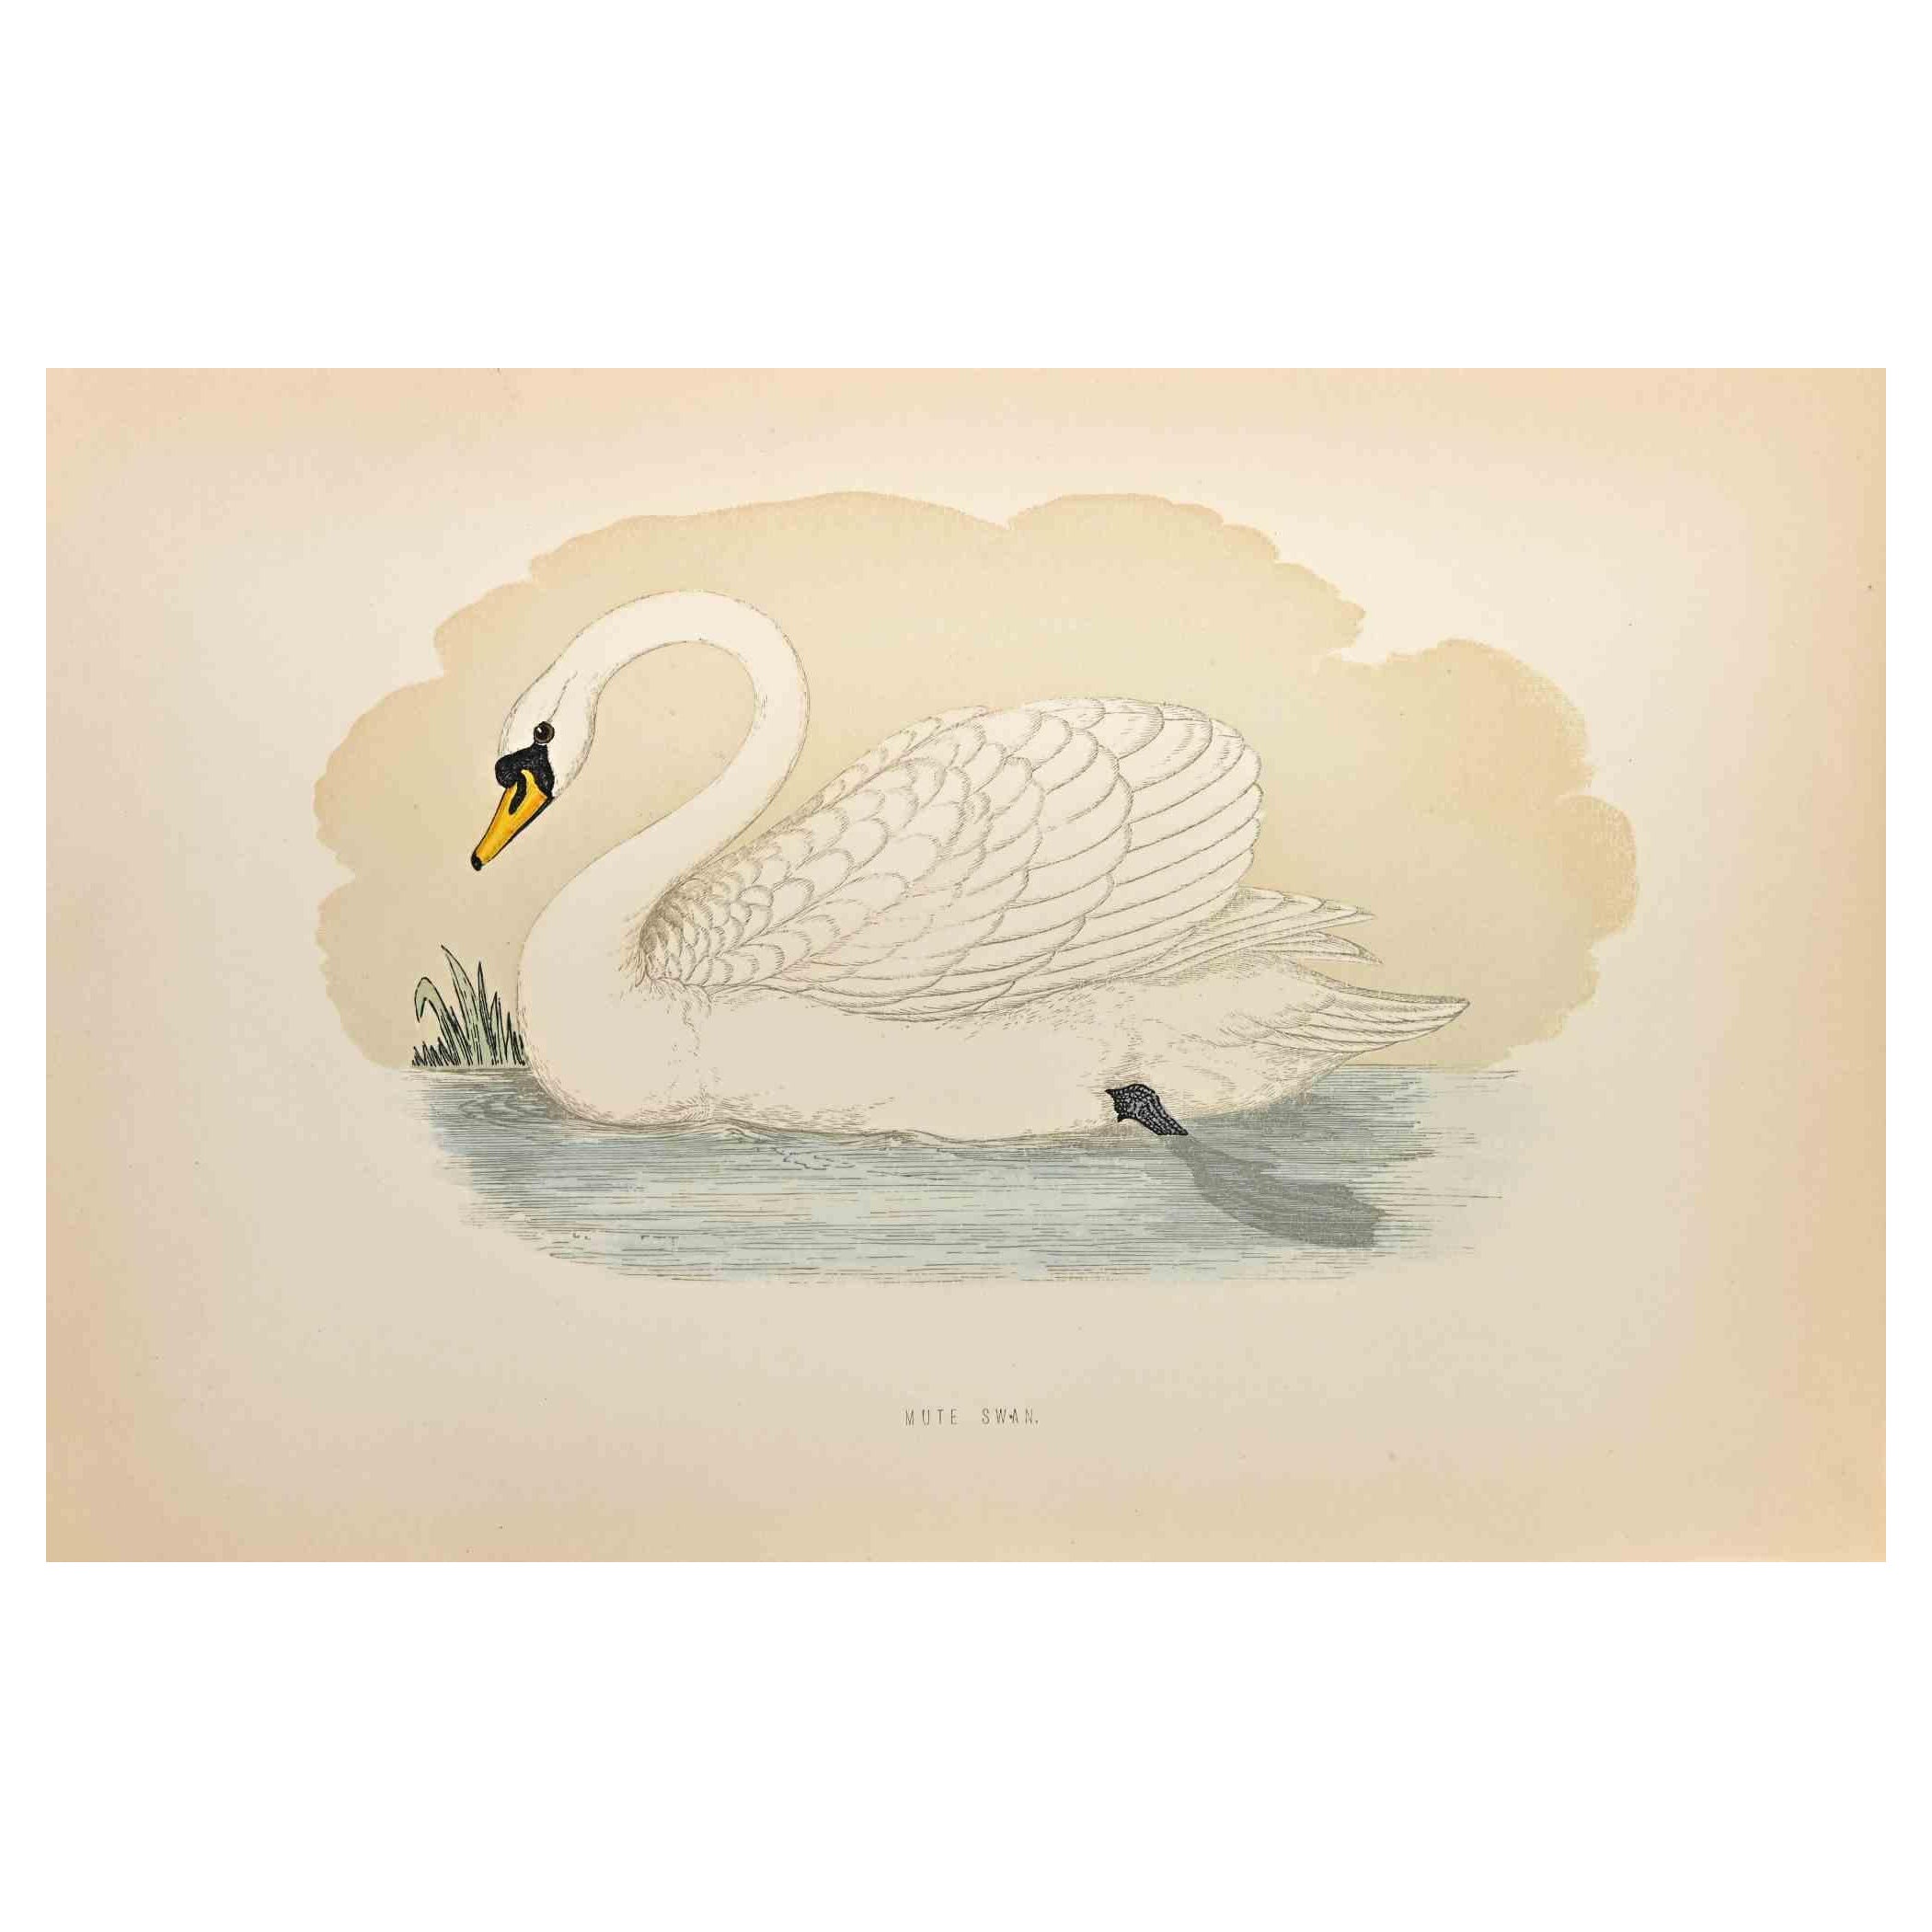 Der Stumme Schwan ist ein modernes Kunstwerk, das 1870 von dem britischen Künstler Alexander Francis Lydon (1836-1917) geschaffen wurde. 

Holzschnitt, handkoloriert, veröffentlicht von London, Bell & Sons, 1870.  Name des Vogels in der Platte